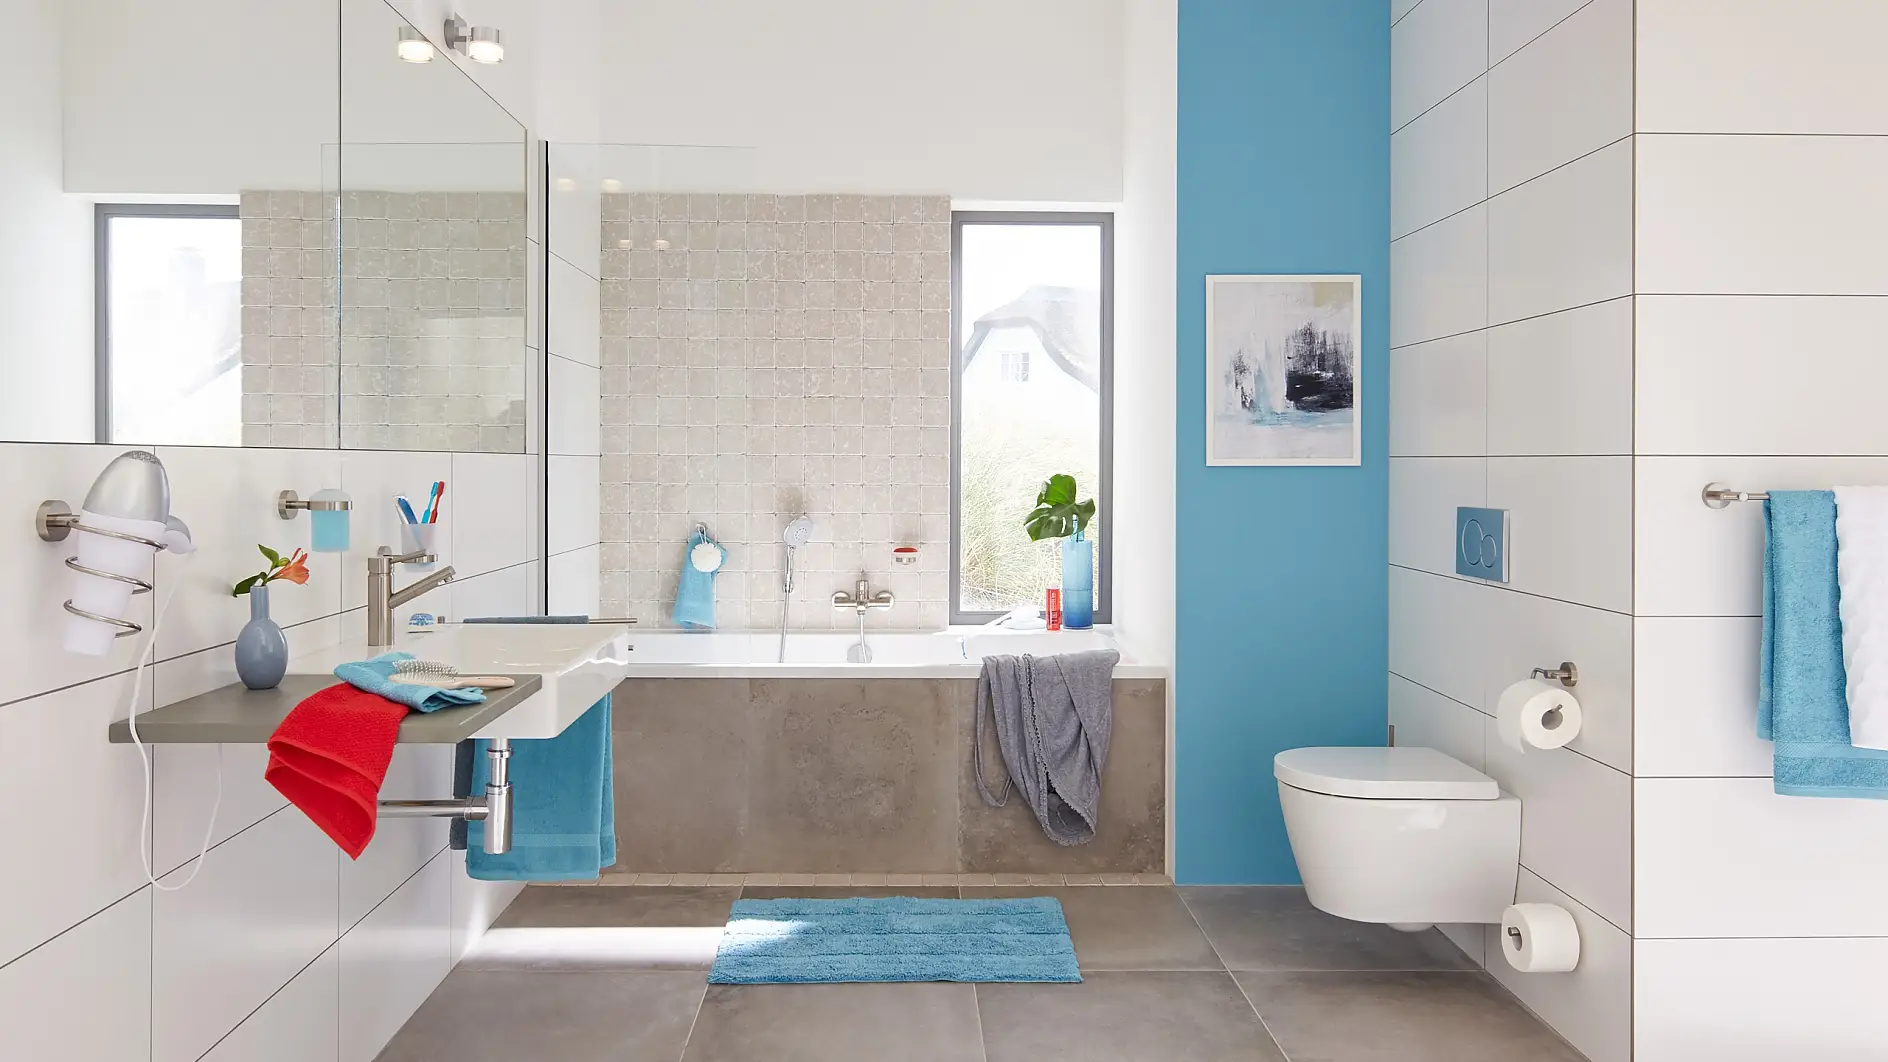 Moderní design, který vaší koupelně dodá na prostornosti a uspořádanosti.